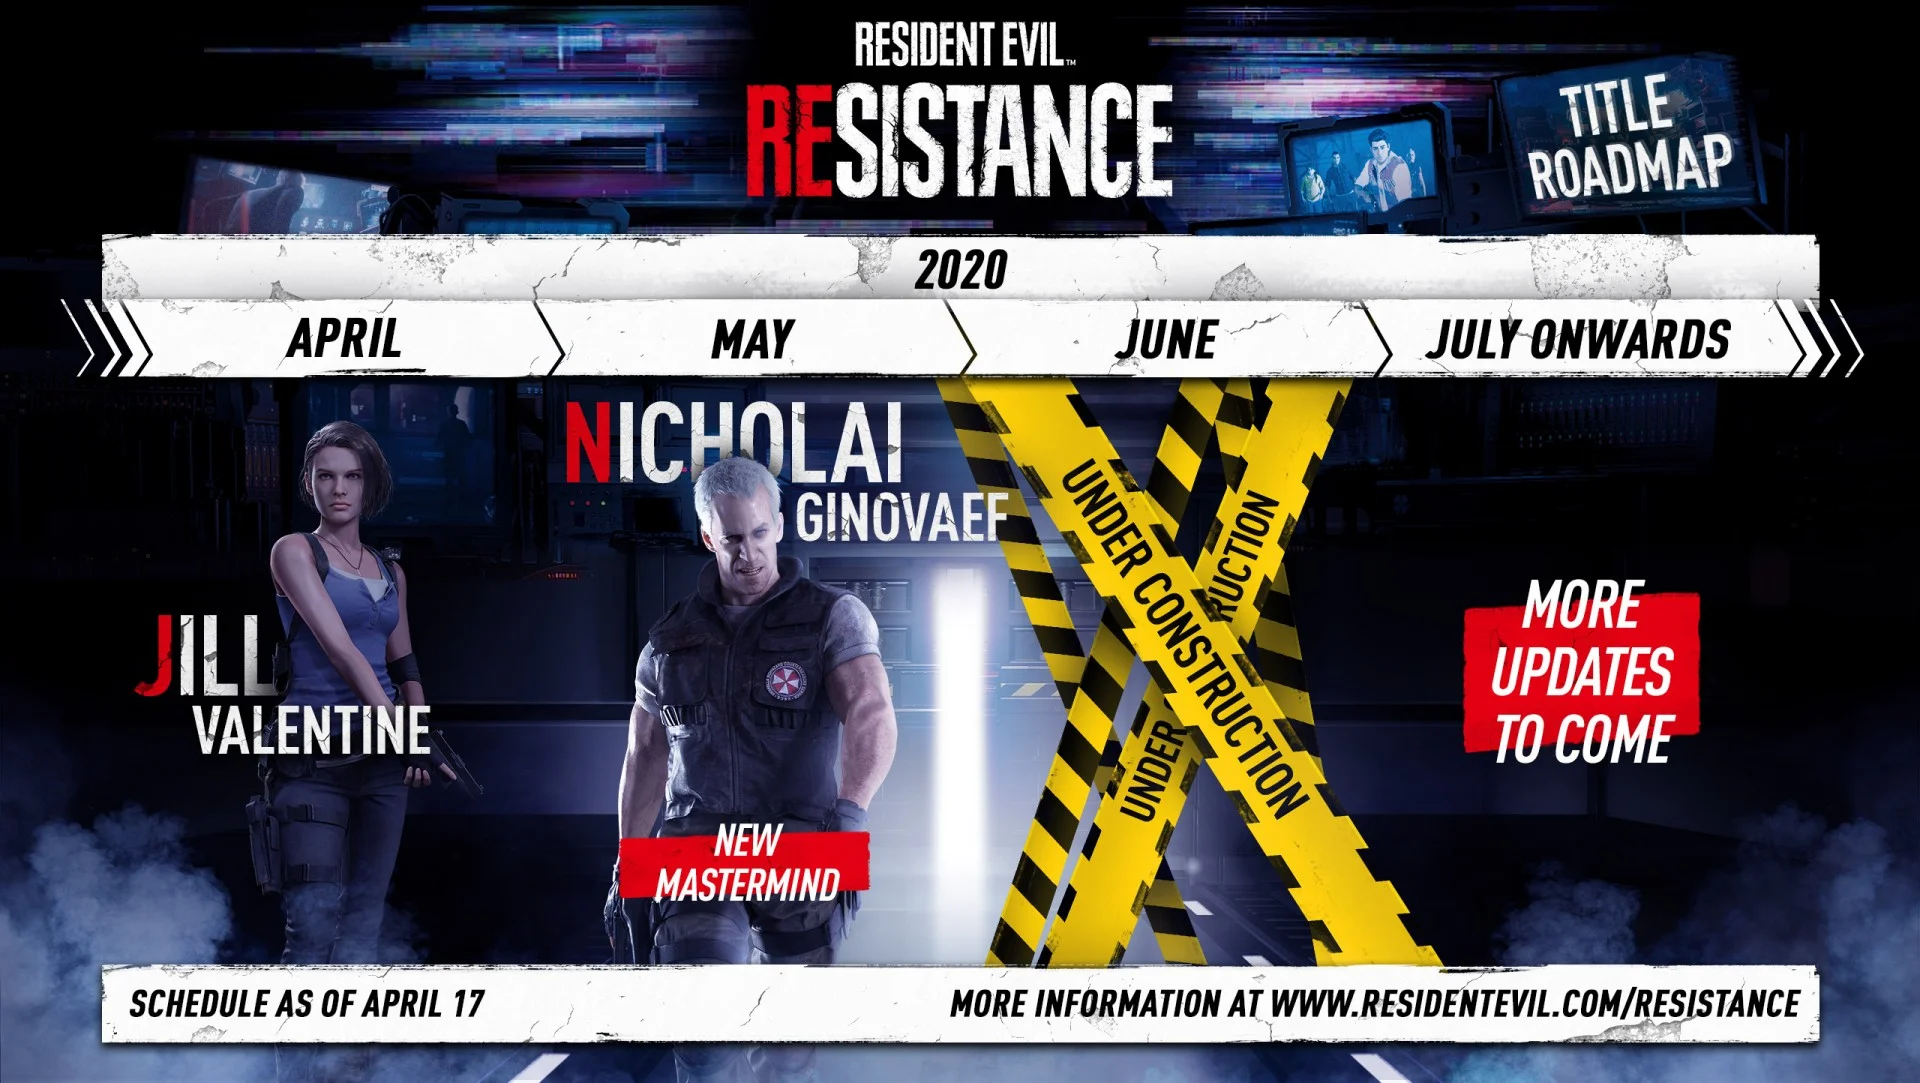 Вслед за Джилл Валентайн в Resident Evil Resistance придёт Николай Зиновьев - фото 1